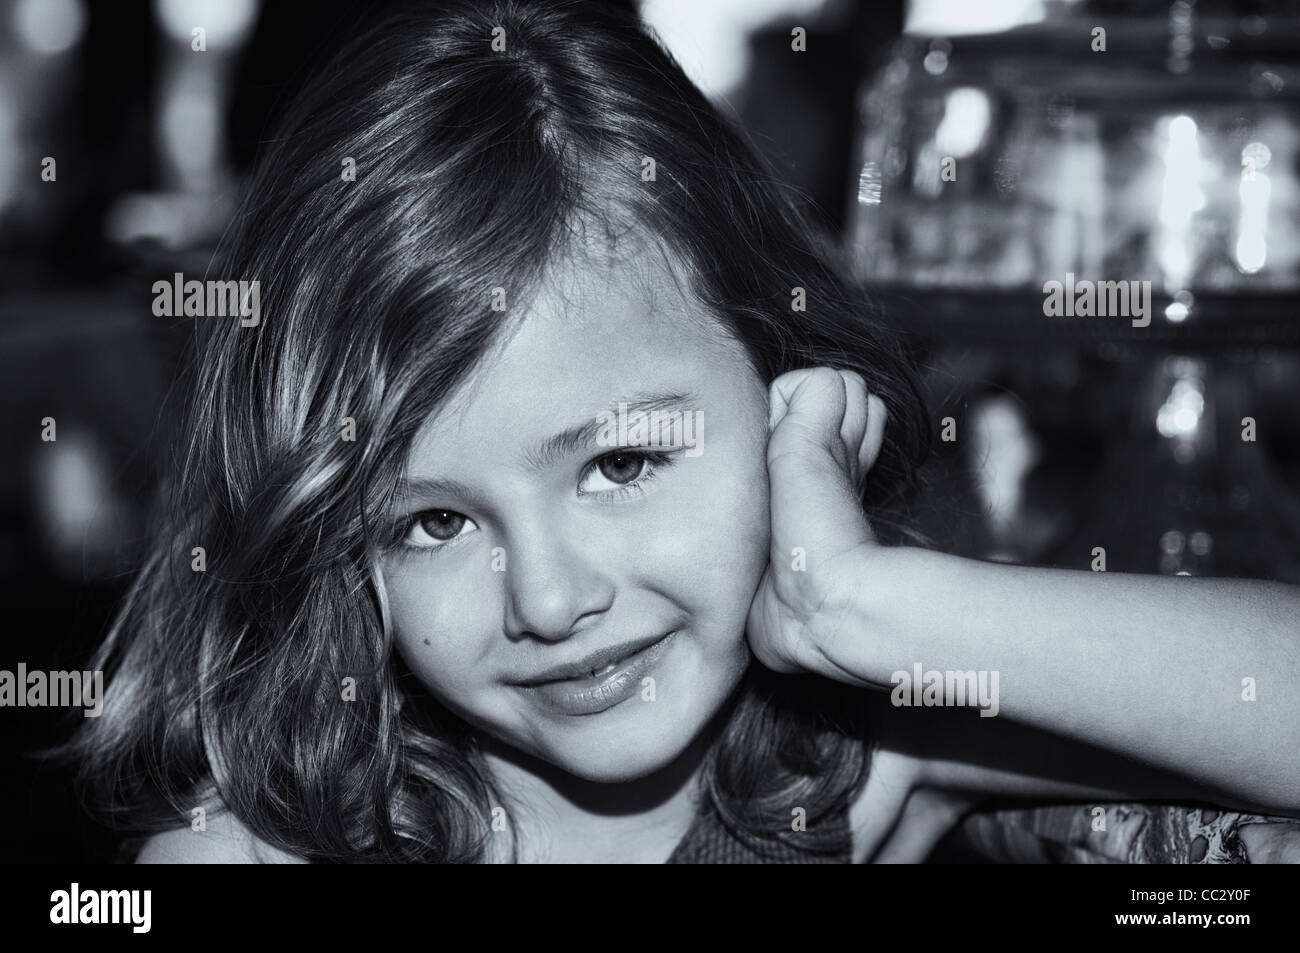 Hermosa Niña 5-6 Años Fotos, retratos, imágenes y fotografía de